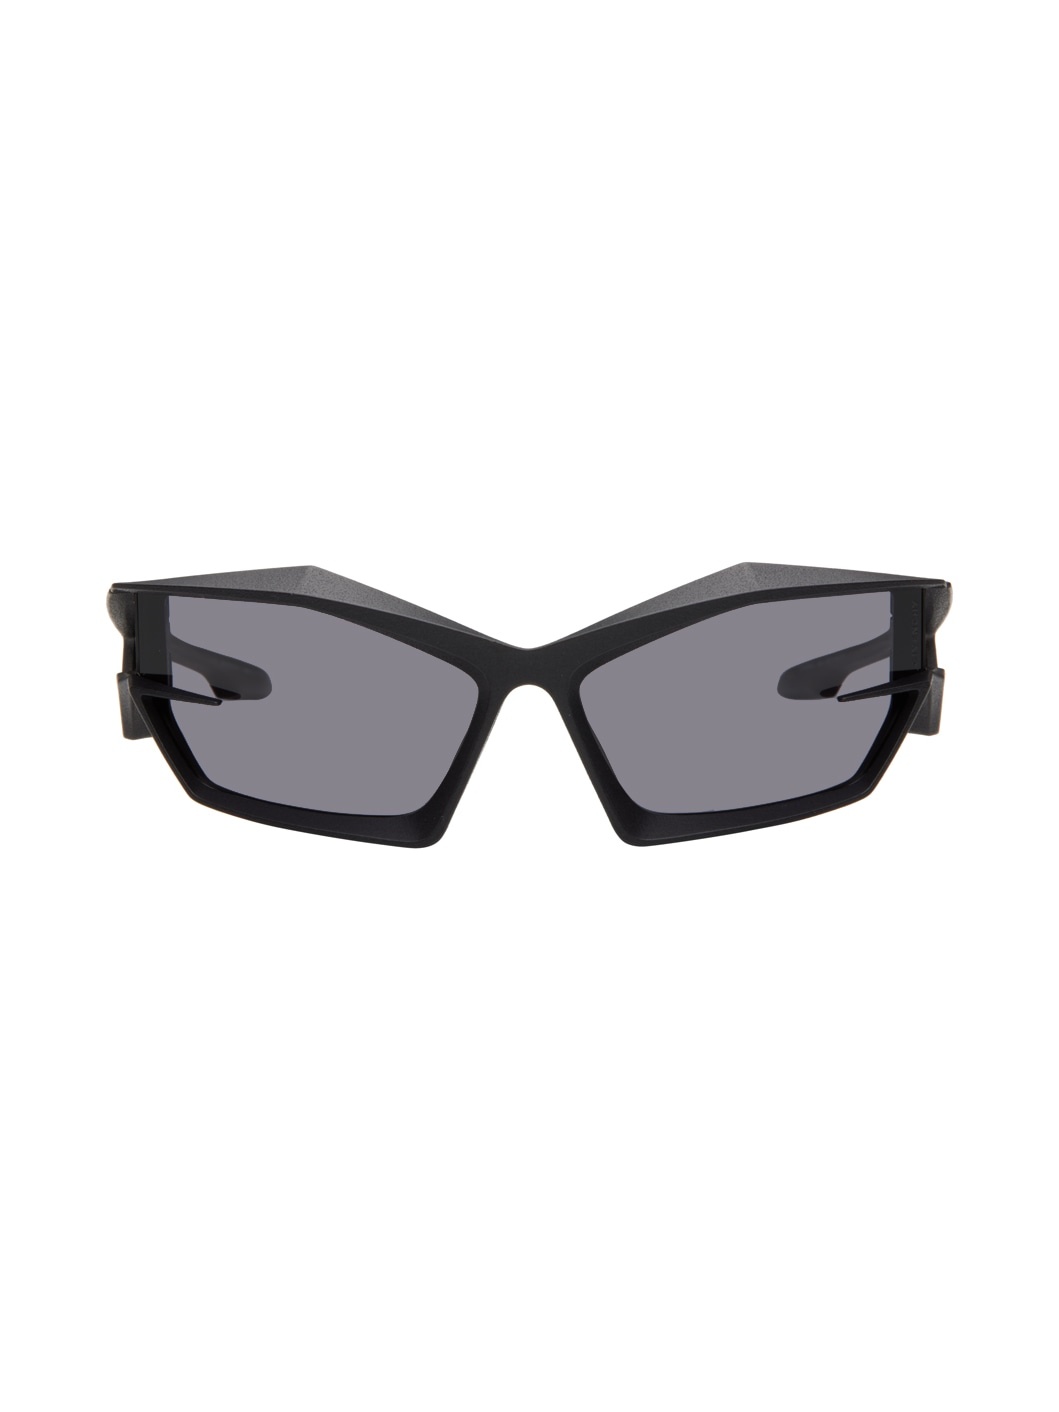 Black Giv Cut Sunglasses - 1